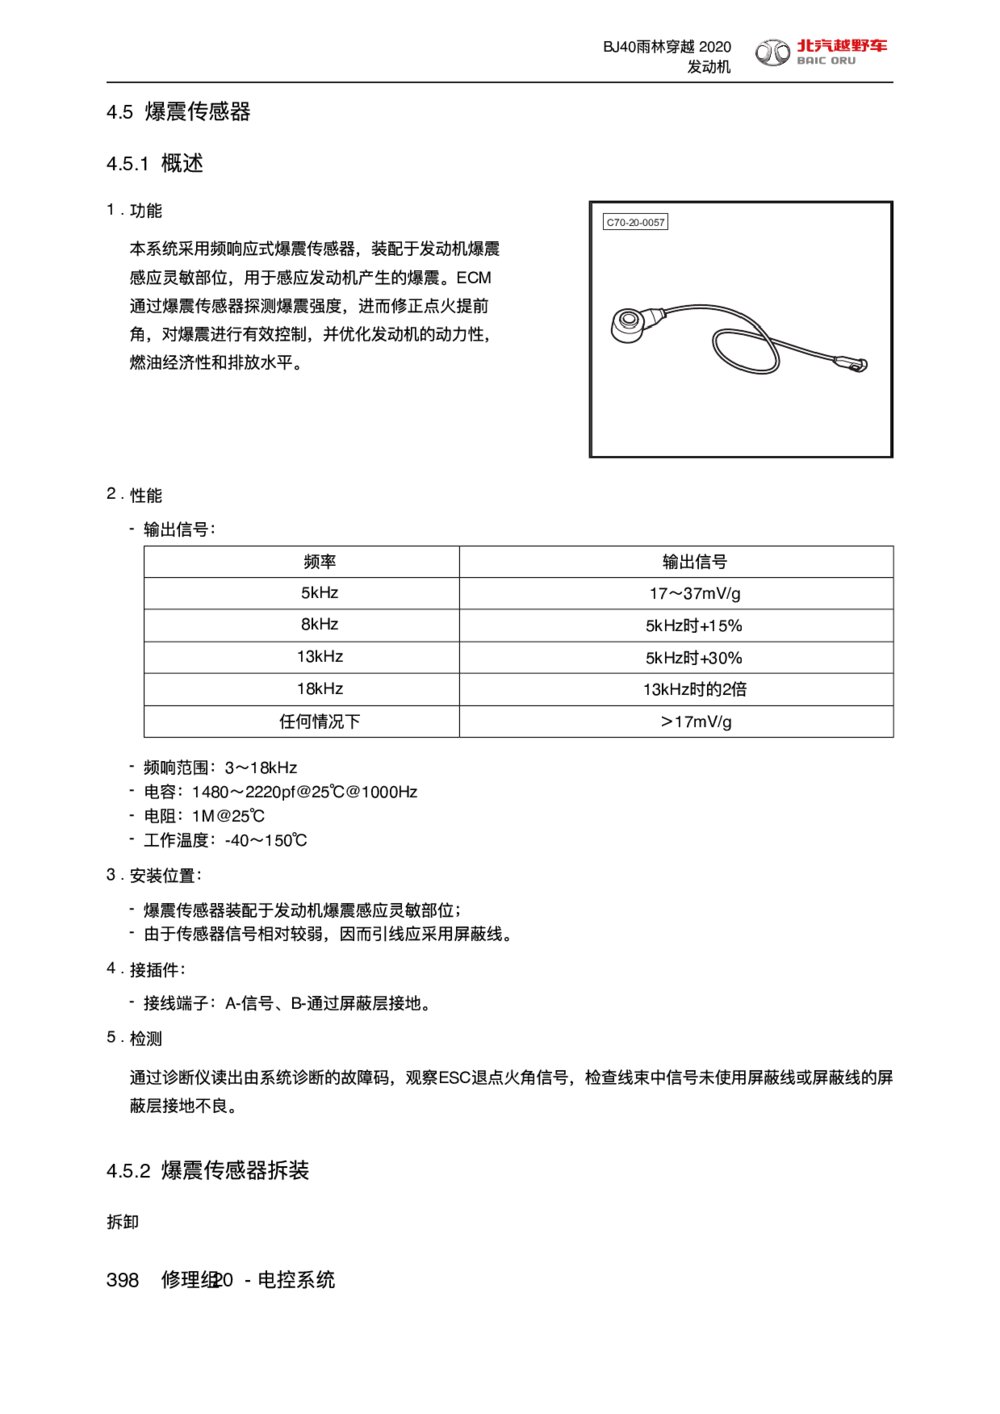 2020款北京BJ40雨林穿越版爆震传感器手册1